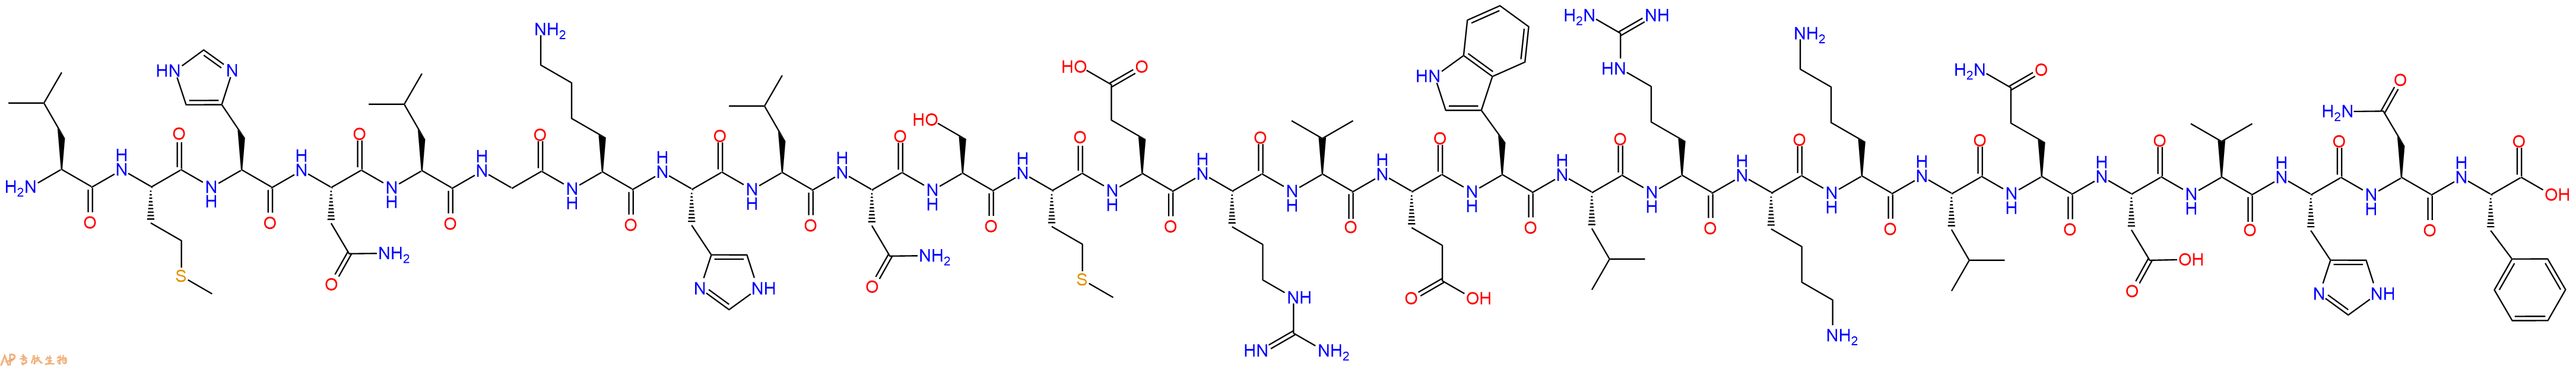 专肽生物产品甲状旁腺激素（7-34）parathyroid hormone (7-34) [Homo sapiens]/[Macaca fascicularis]